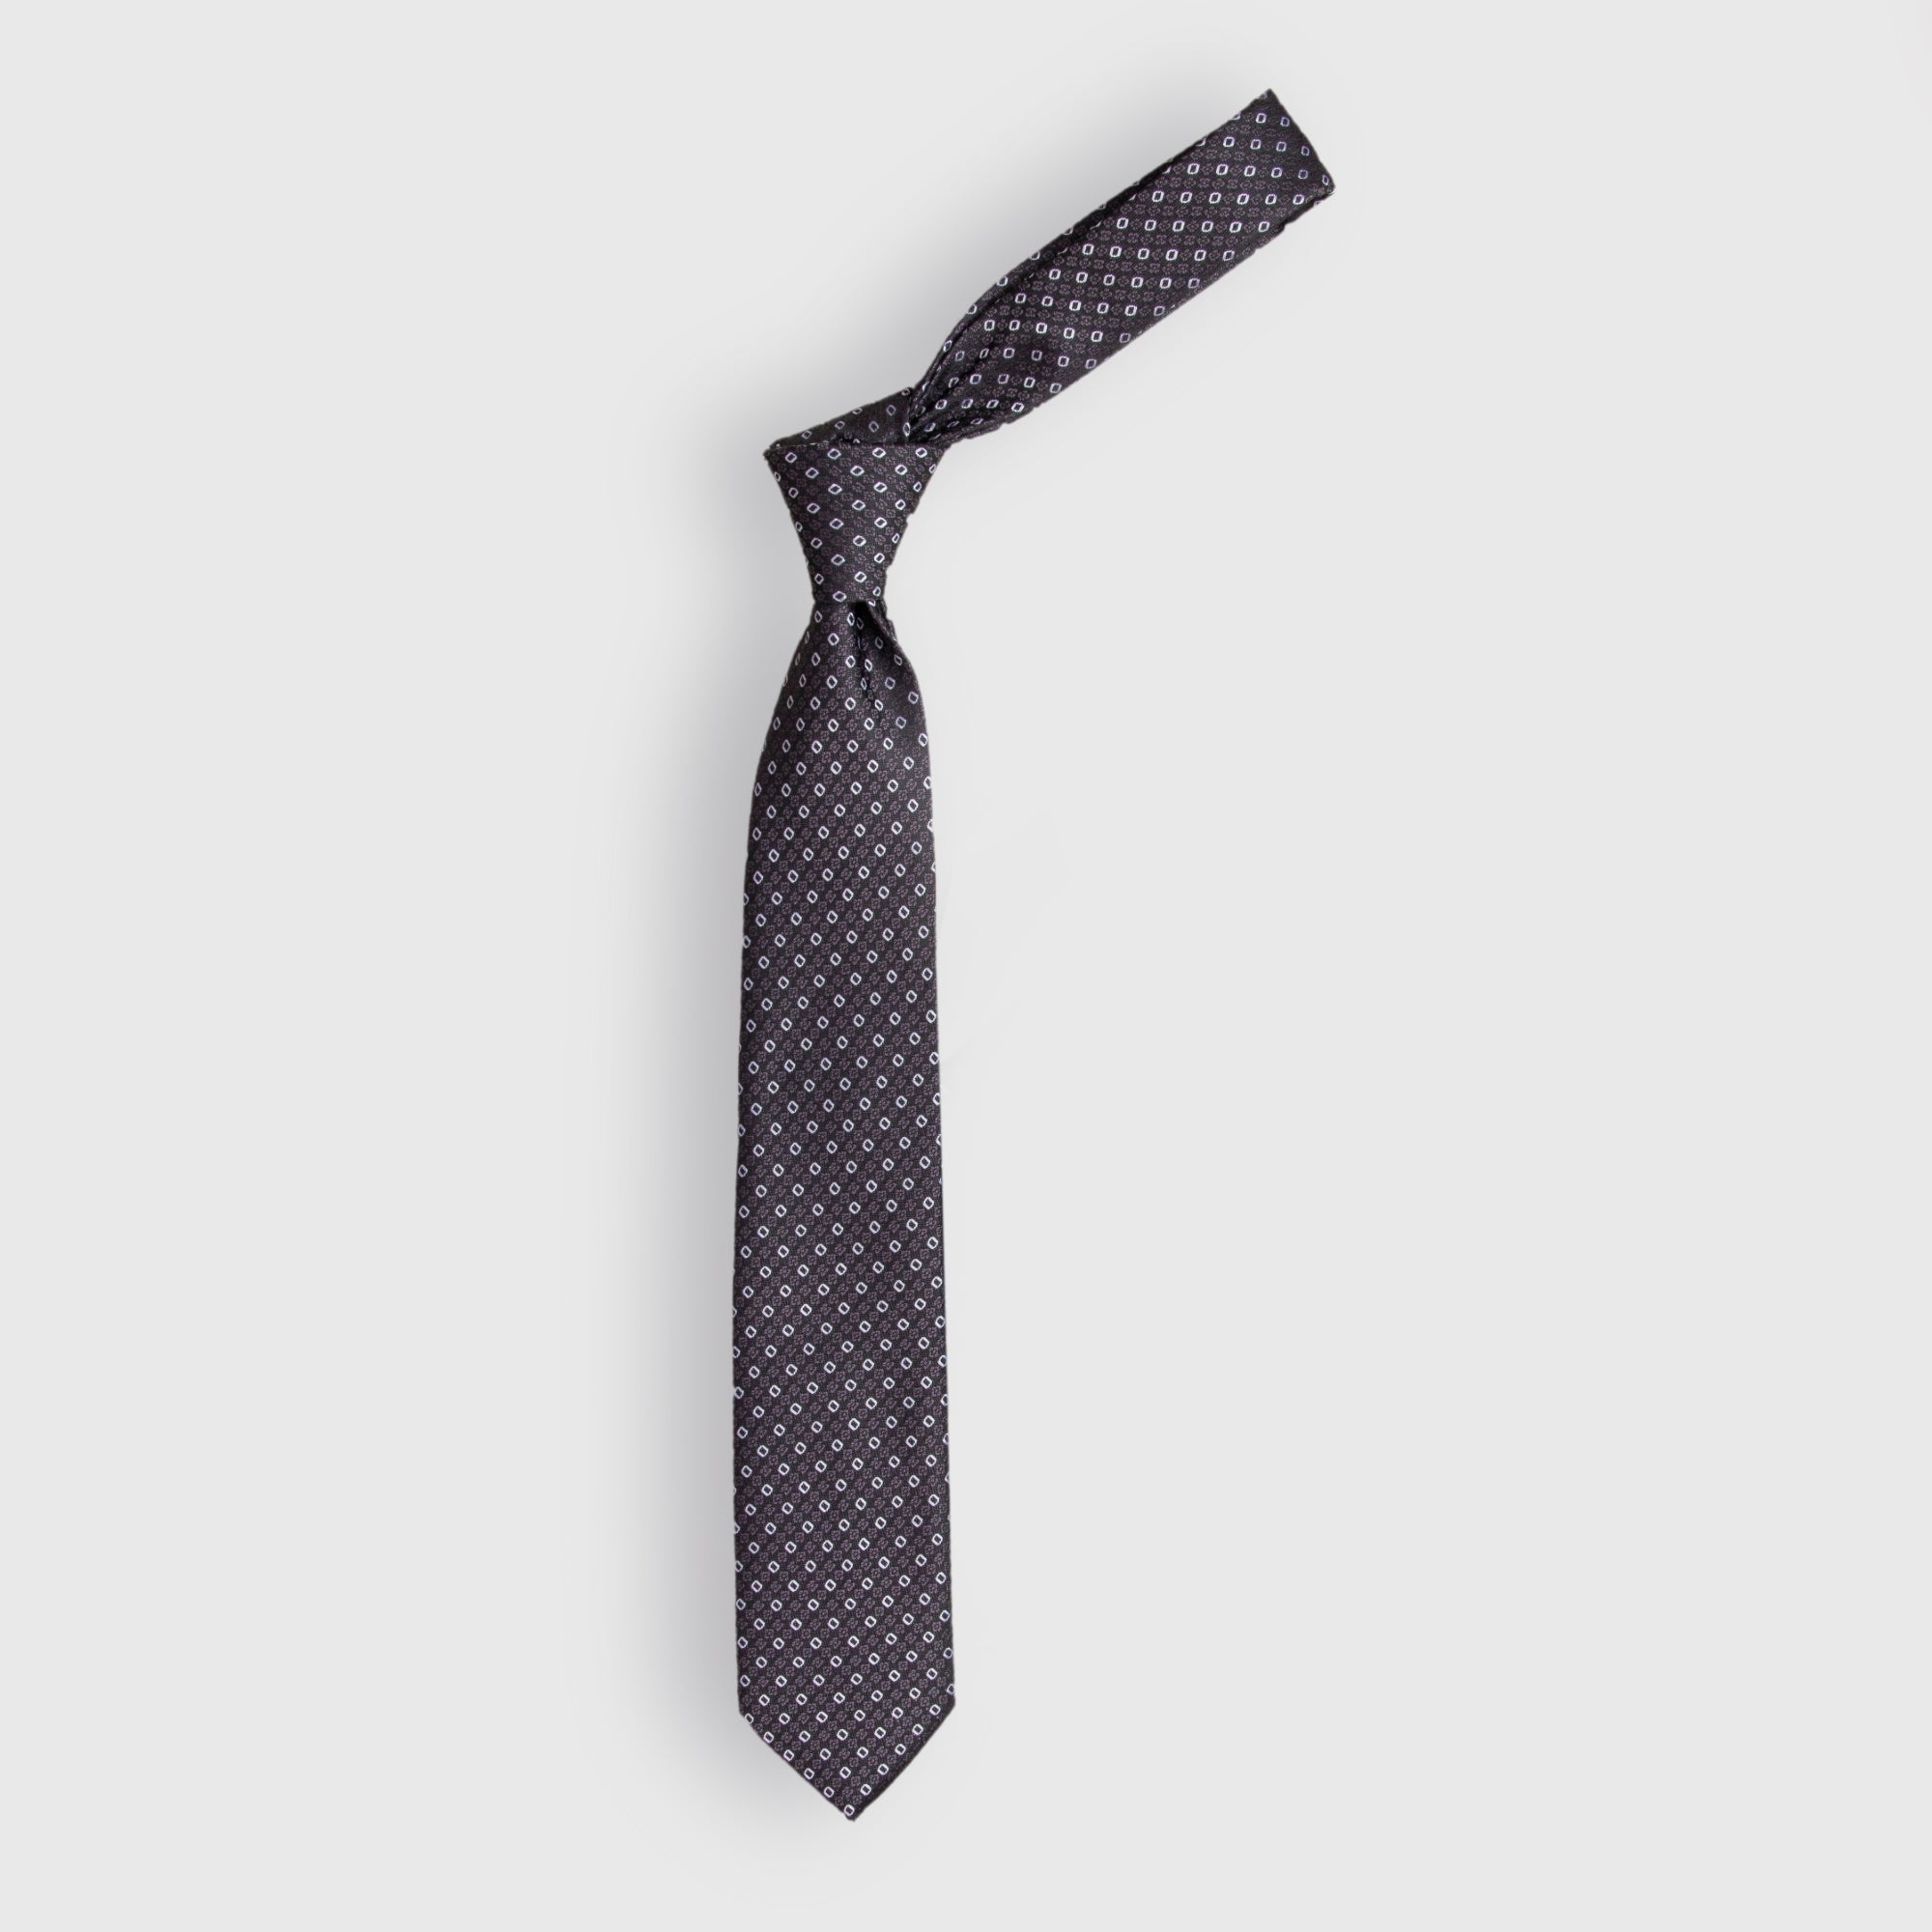 Grey Printed Tie